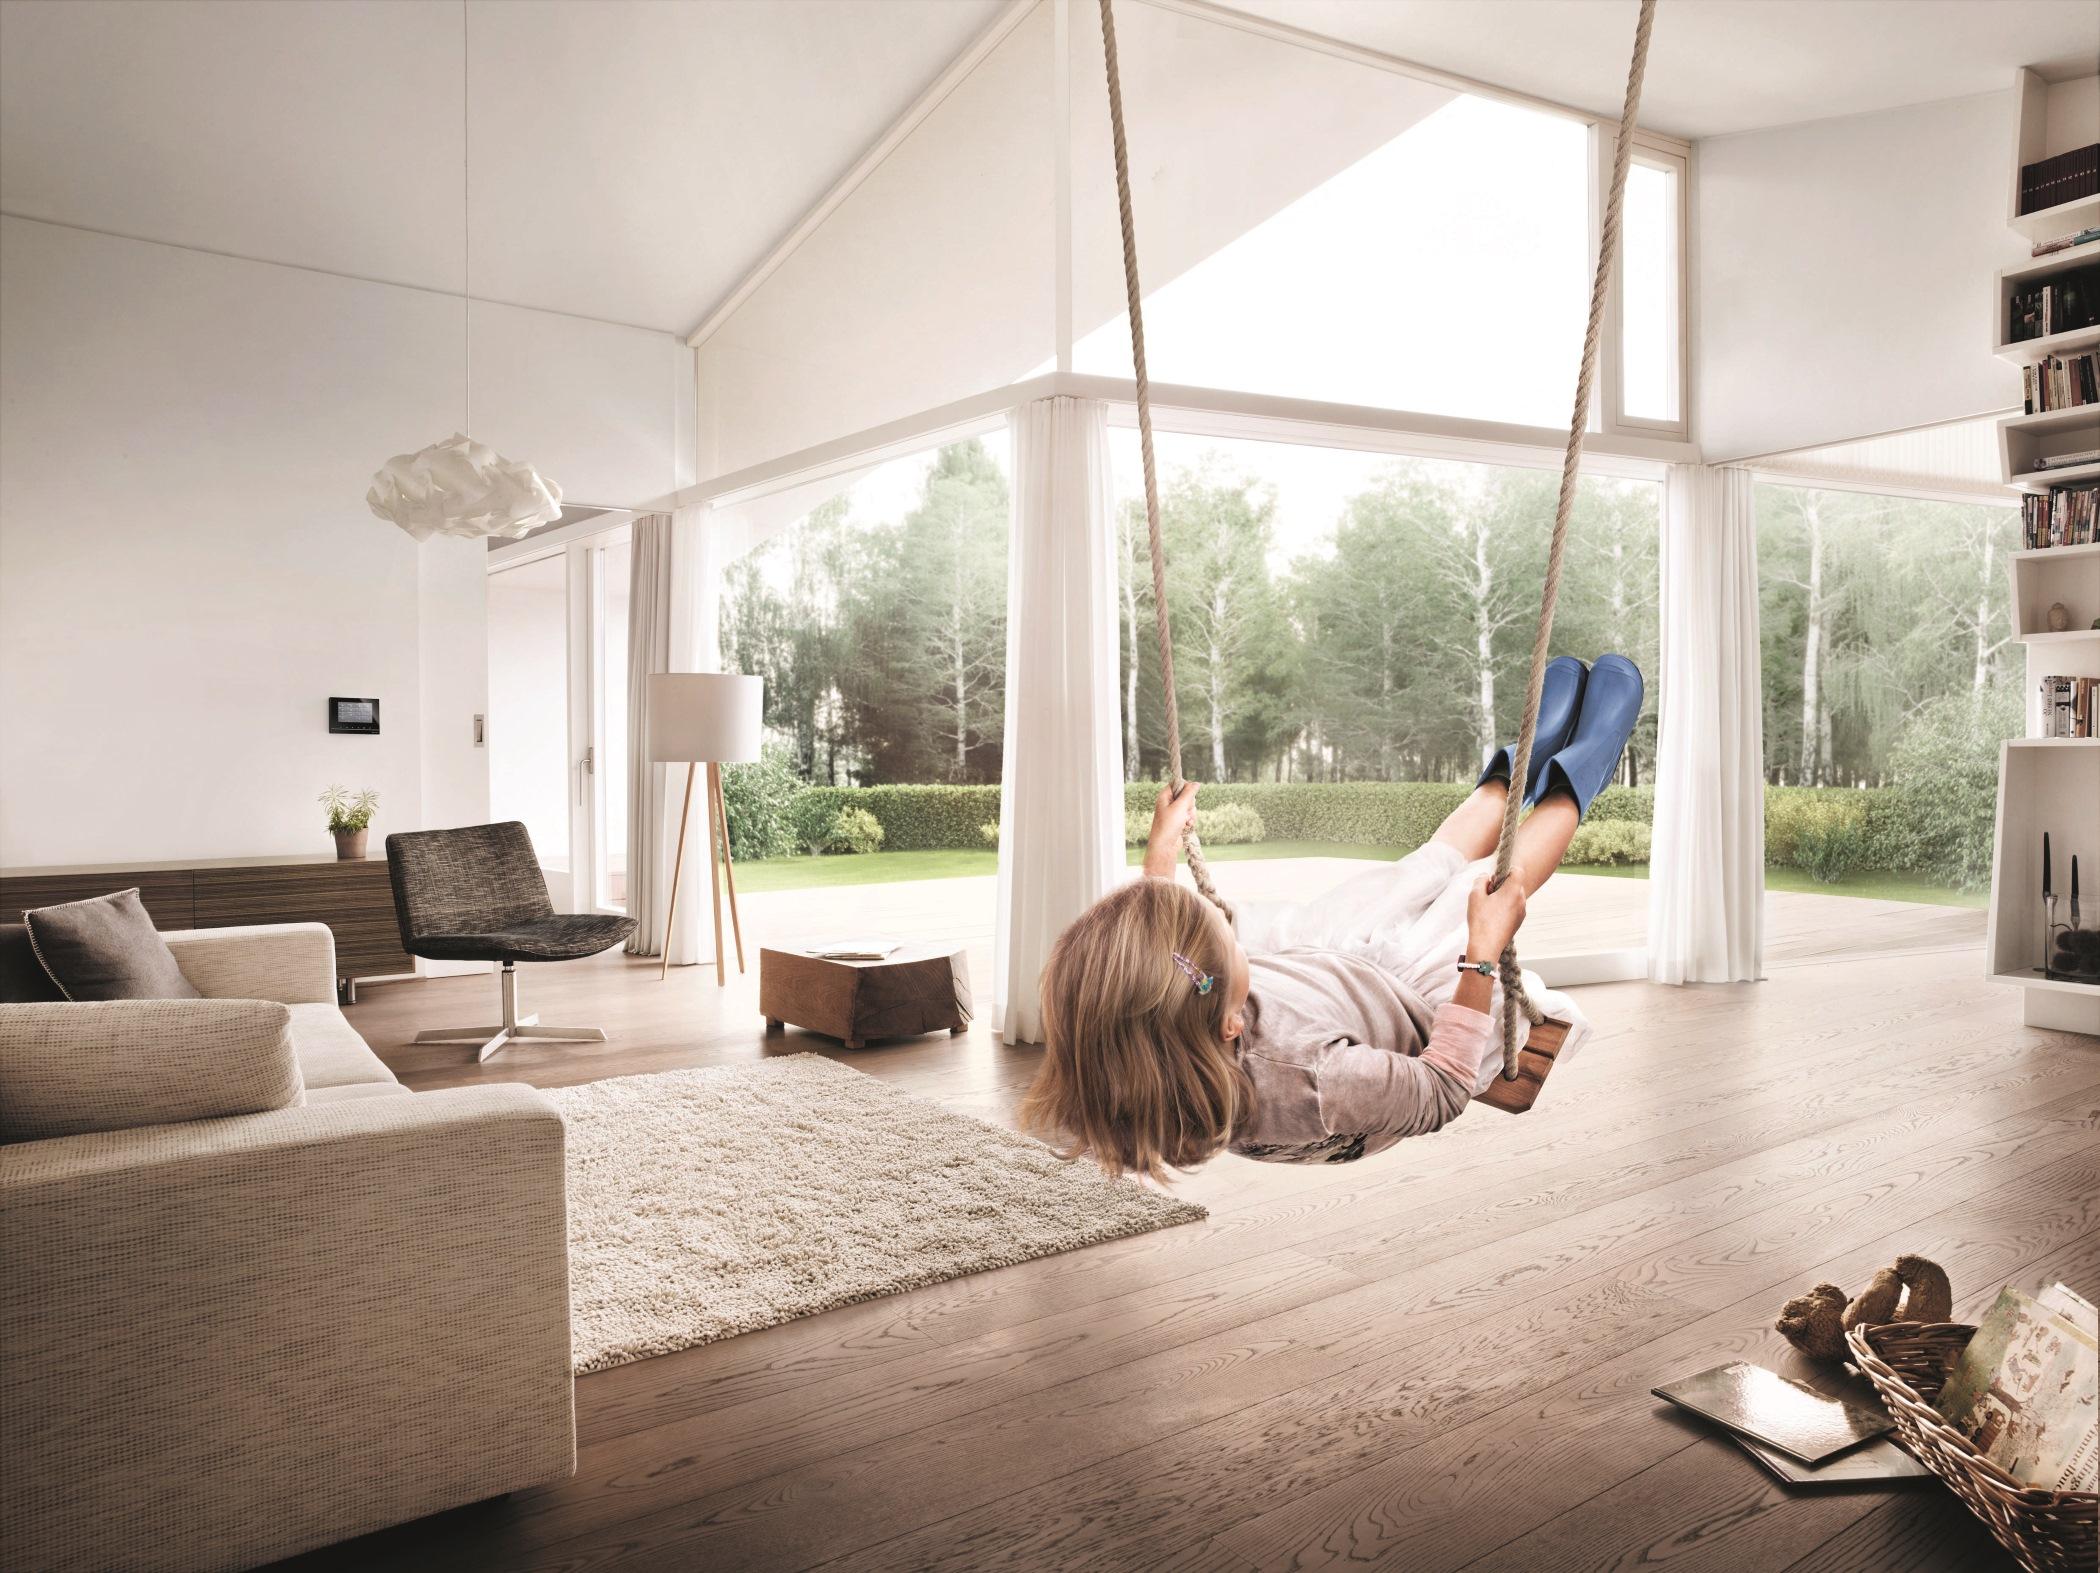 Schaukel im Wohnzimmer #schaukel #wohnzimmergestaltung #smarthome #panoramafenster #moderneswohnzimmer ©BUSCH-JAEGER Elektro GmbH